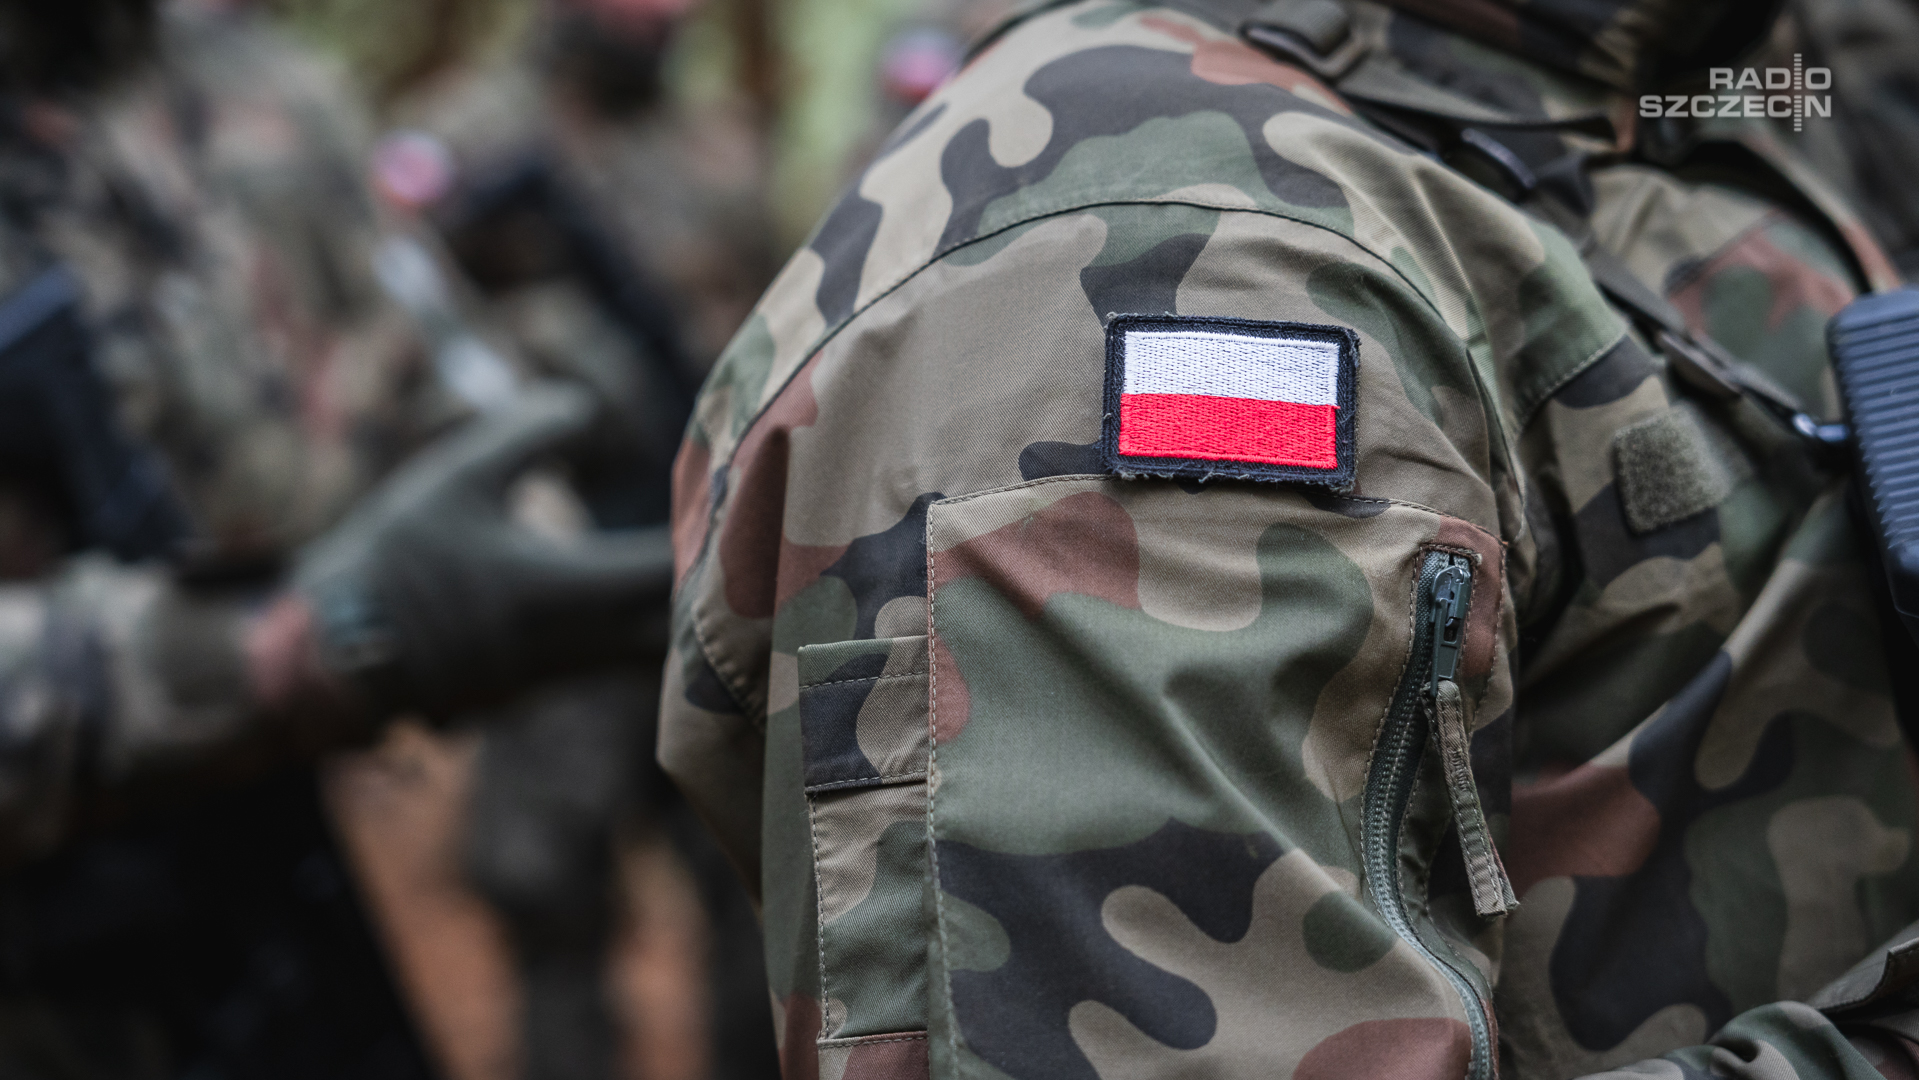 Wiceminister spraw zagranicznych Marcin Przydacz powiedział, że pieniądze przyznane Polsce przez Stany Zjednoczone w ramach Foreign Military Financing zostaną przeznaczone na wzmocnienie polskiej armii i bezpieczeństwa.